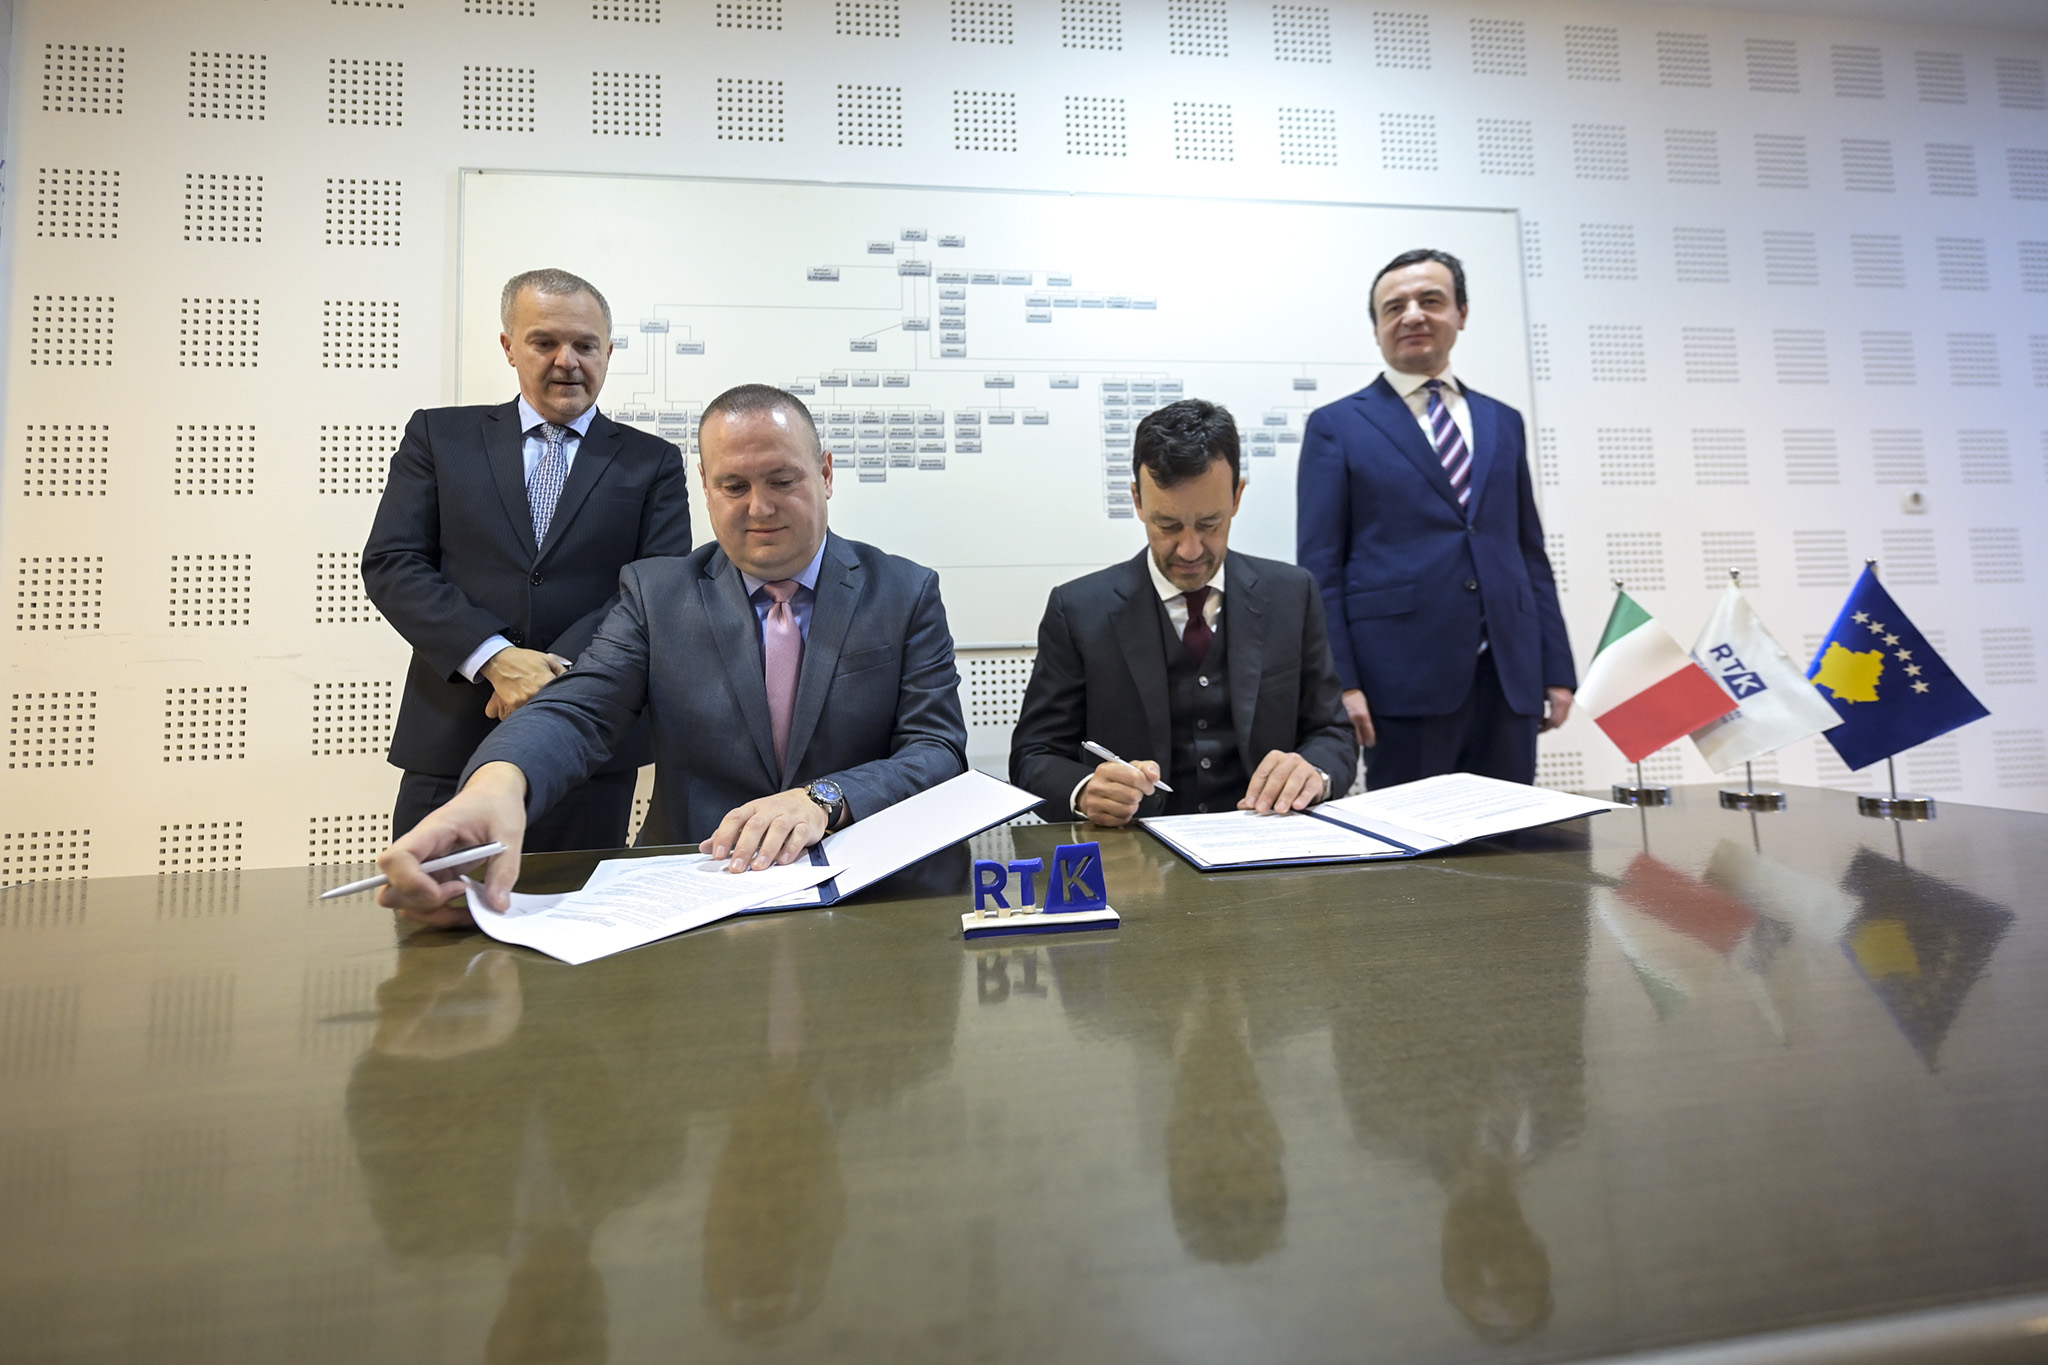 Mbahet ceremonia e nënshkrimit të marrëveshjes mes RTK, Ambasadës Italiane dhe Institutit Italian të Kulturës së Tiranës